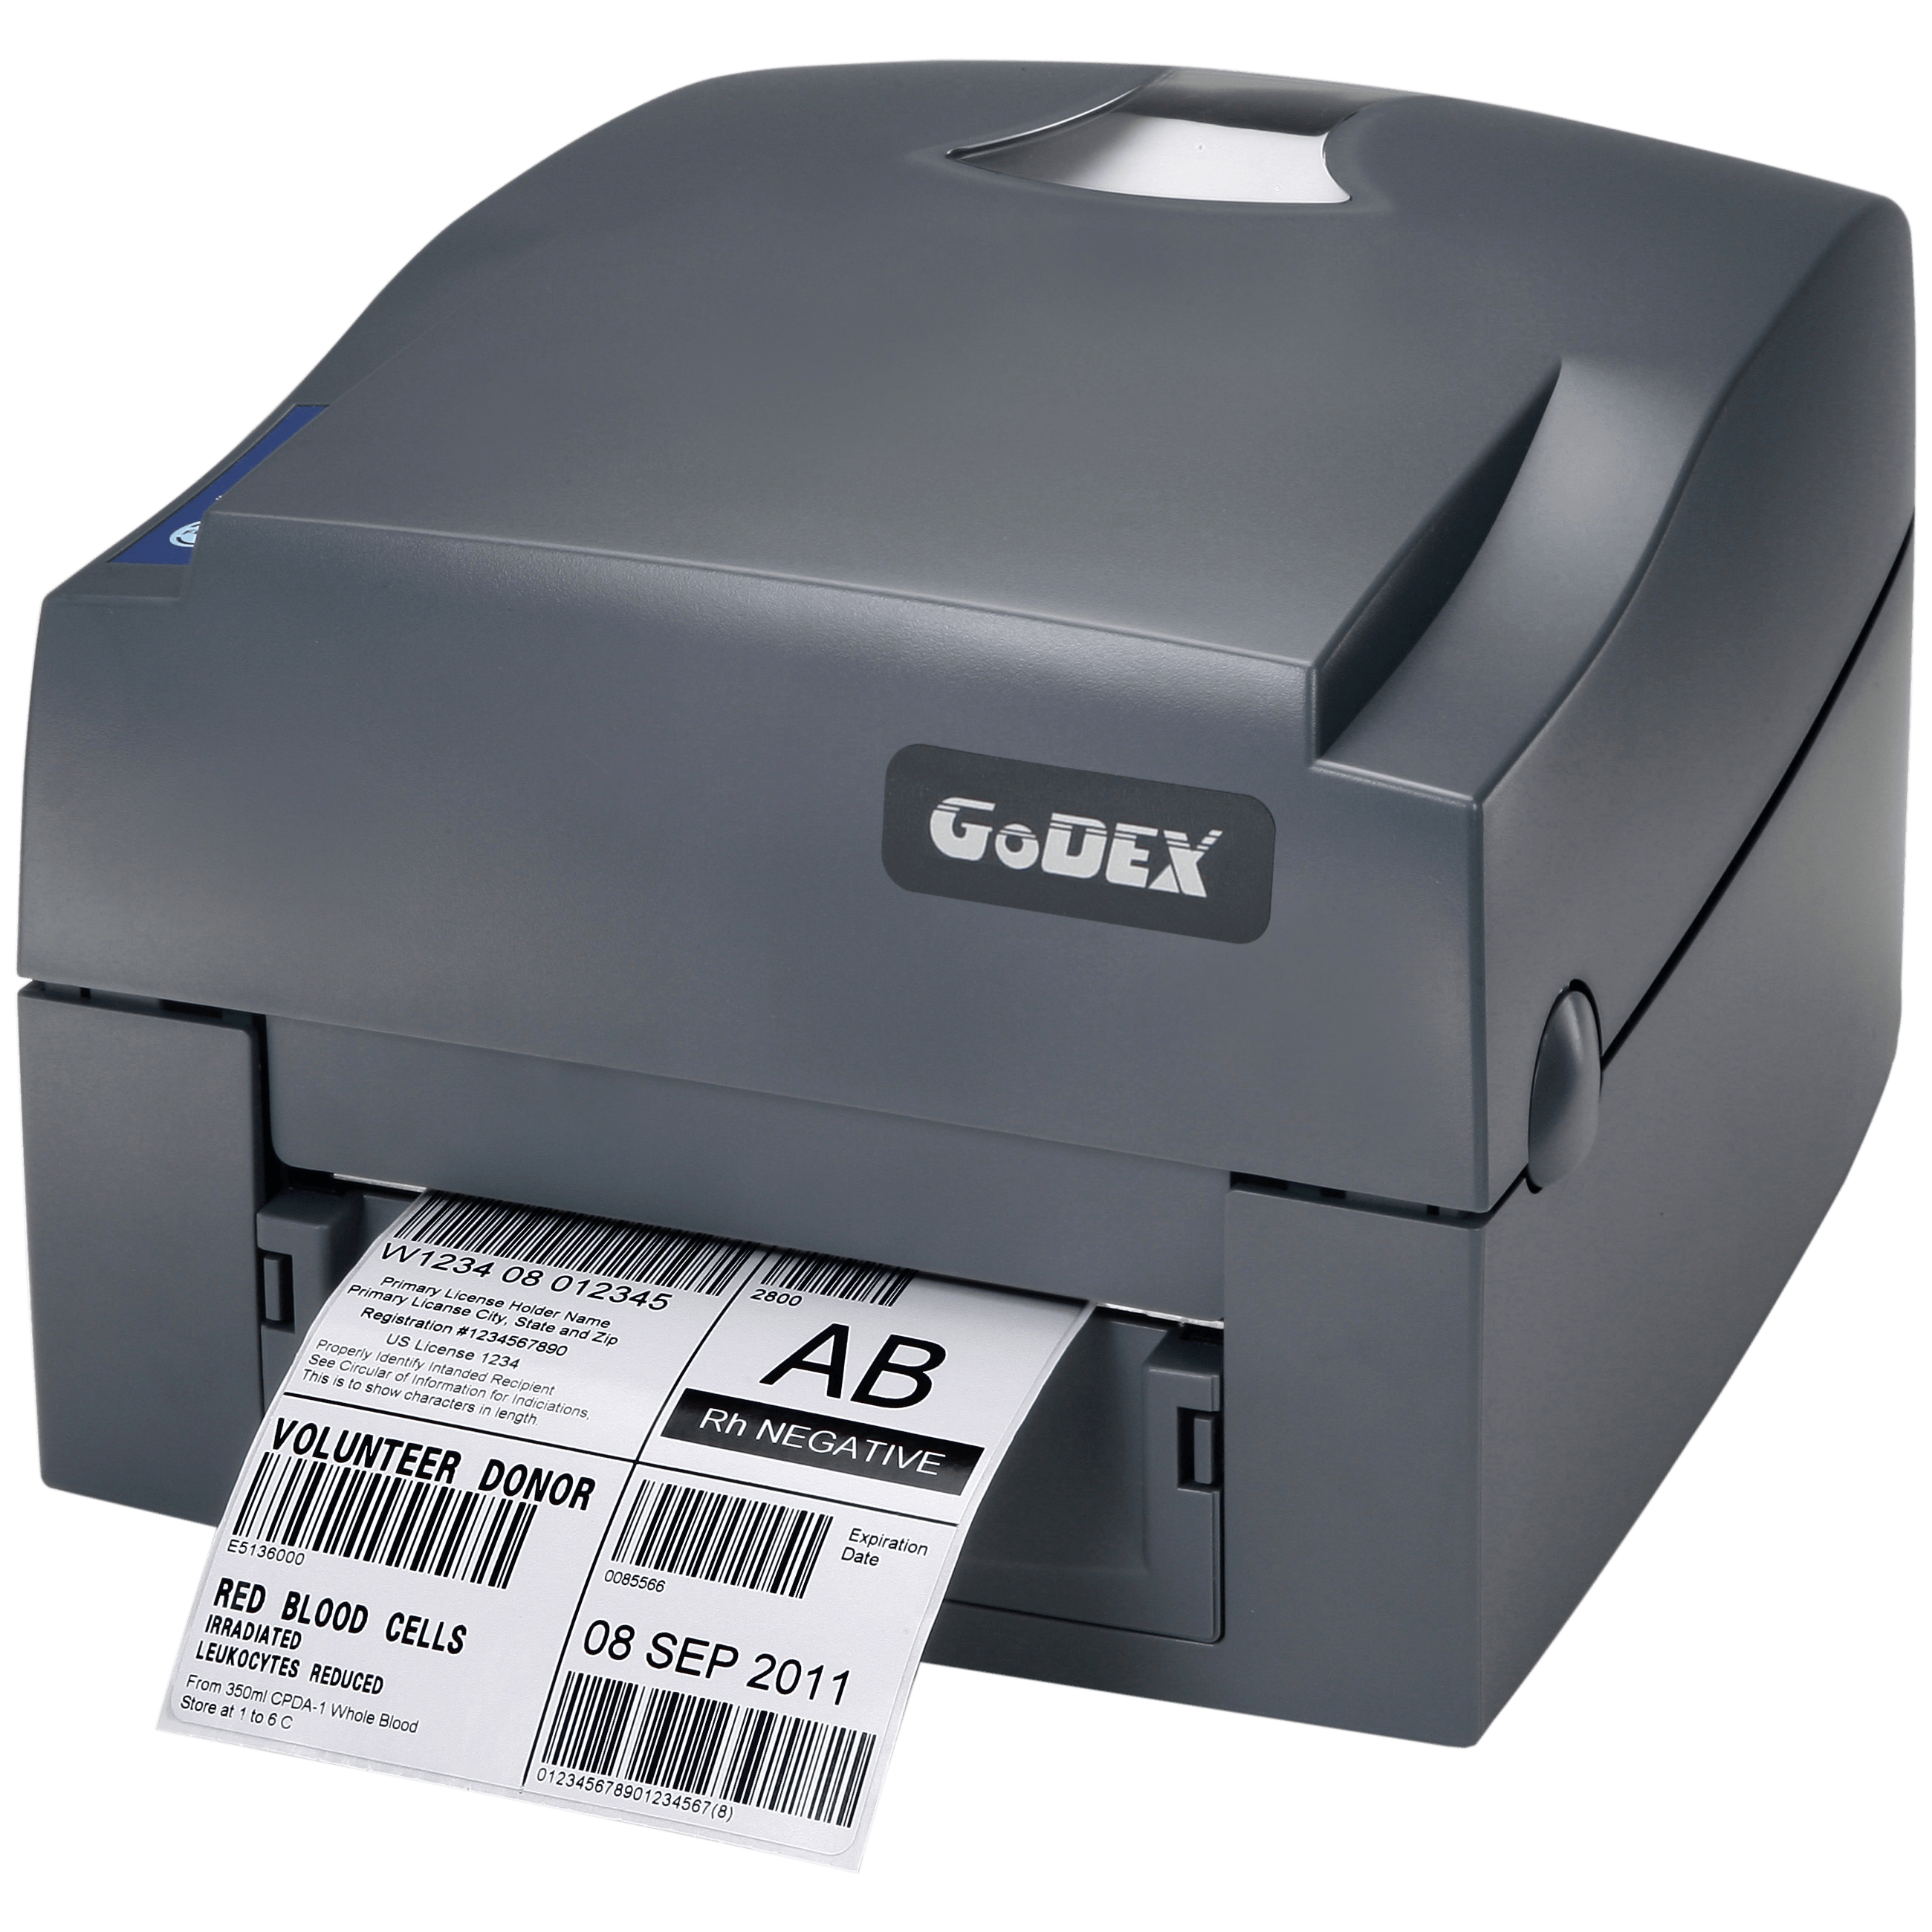 Godex G500 labelprinter